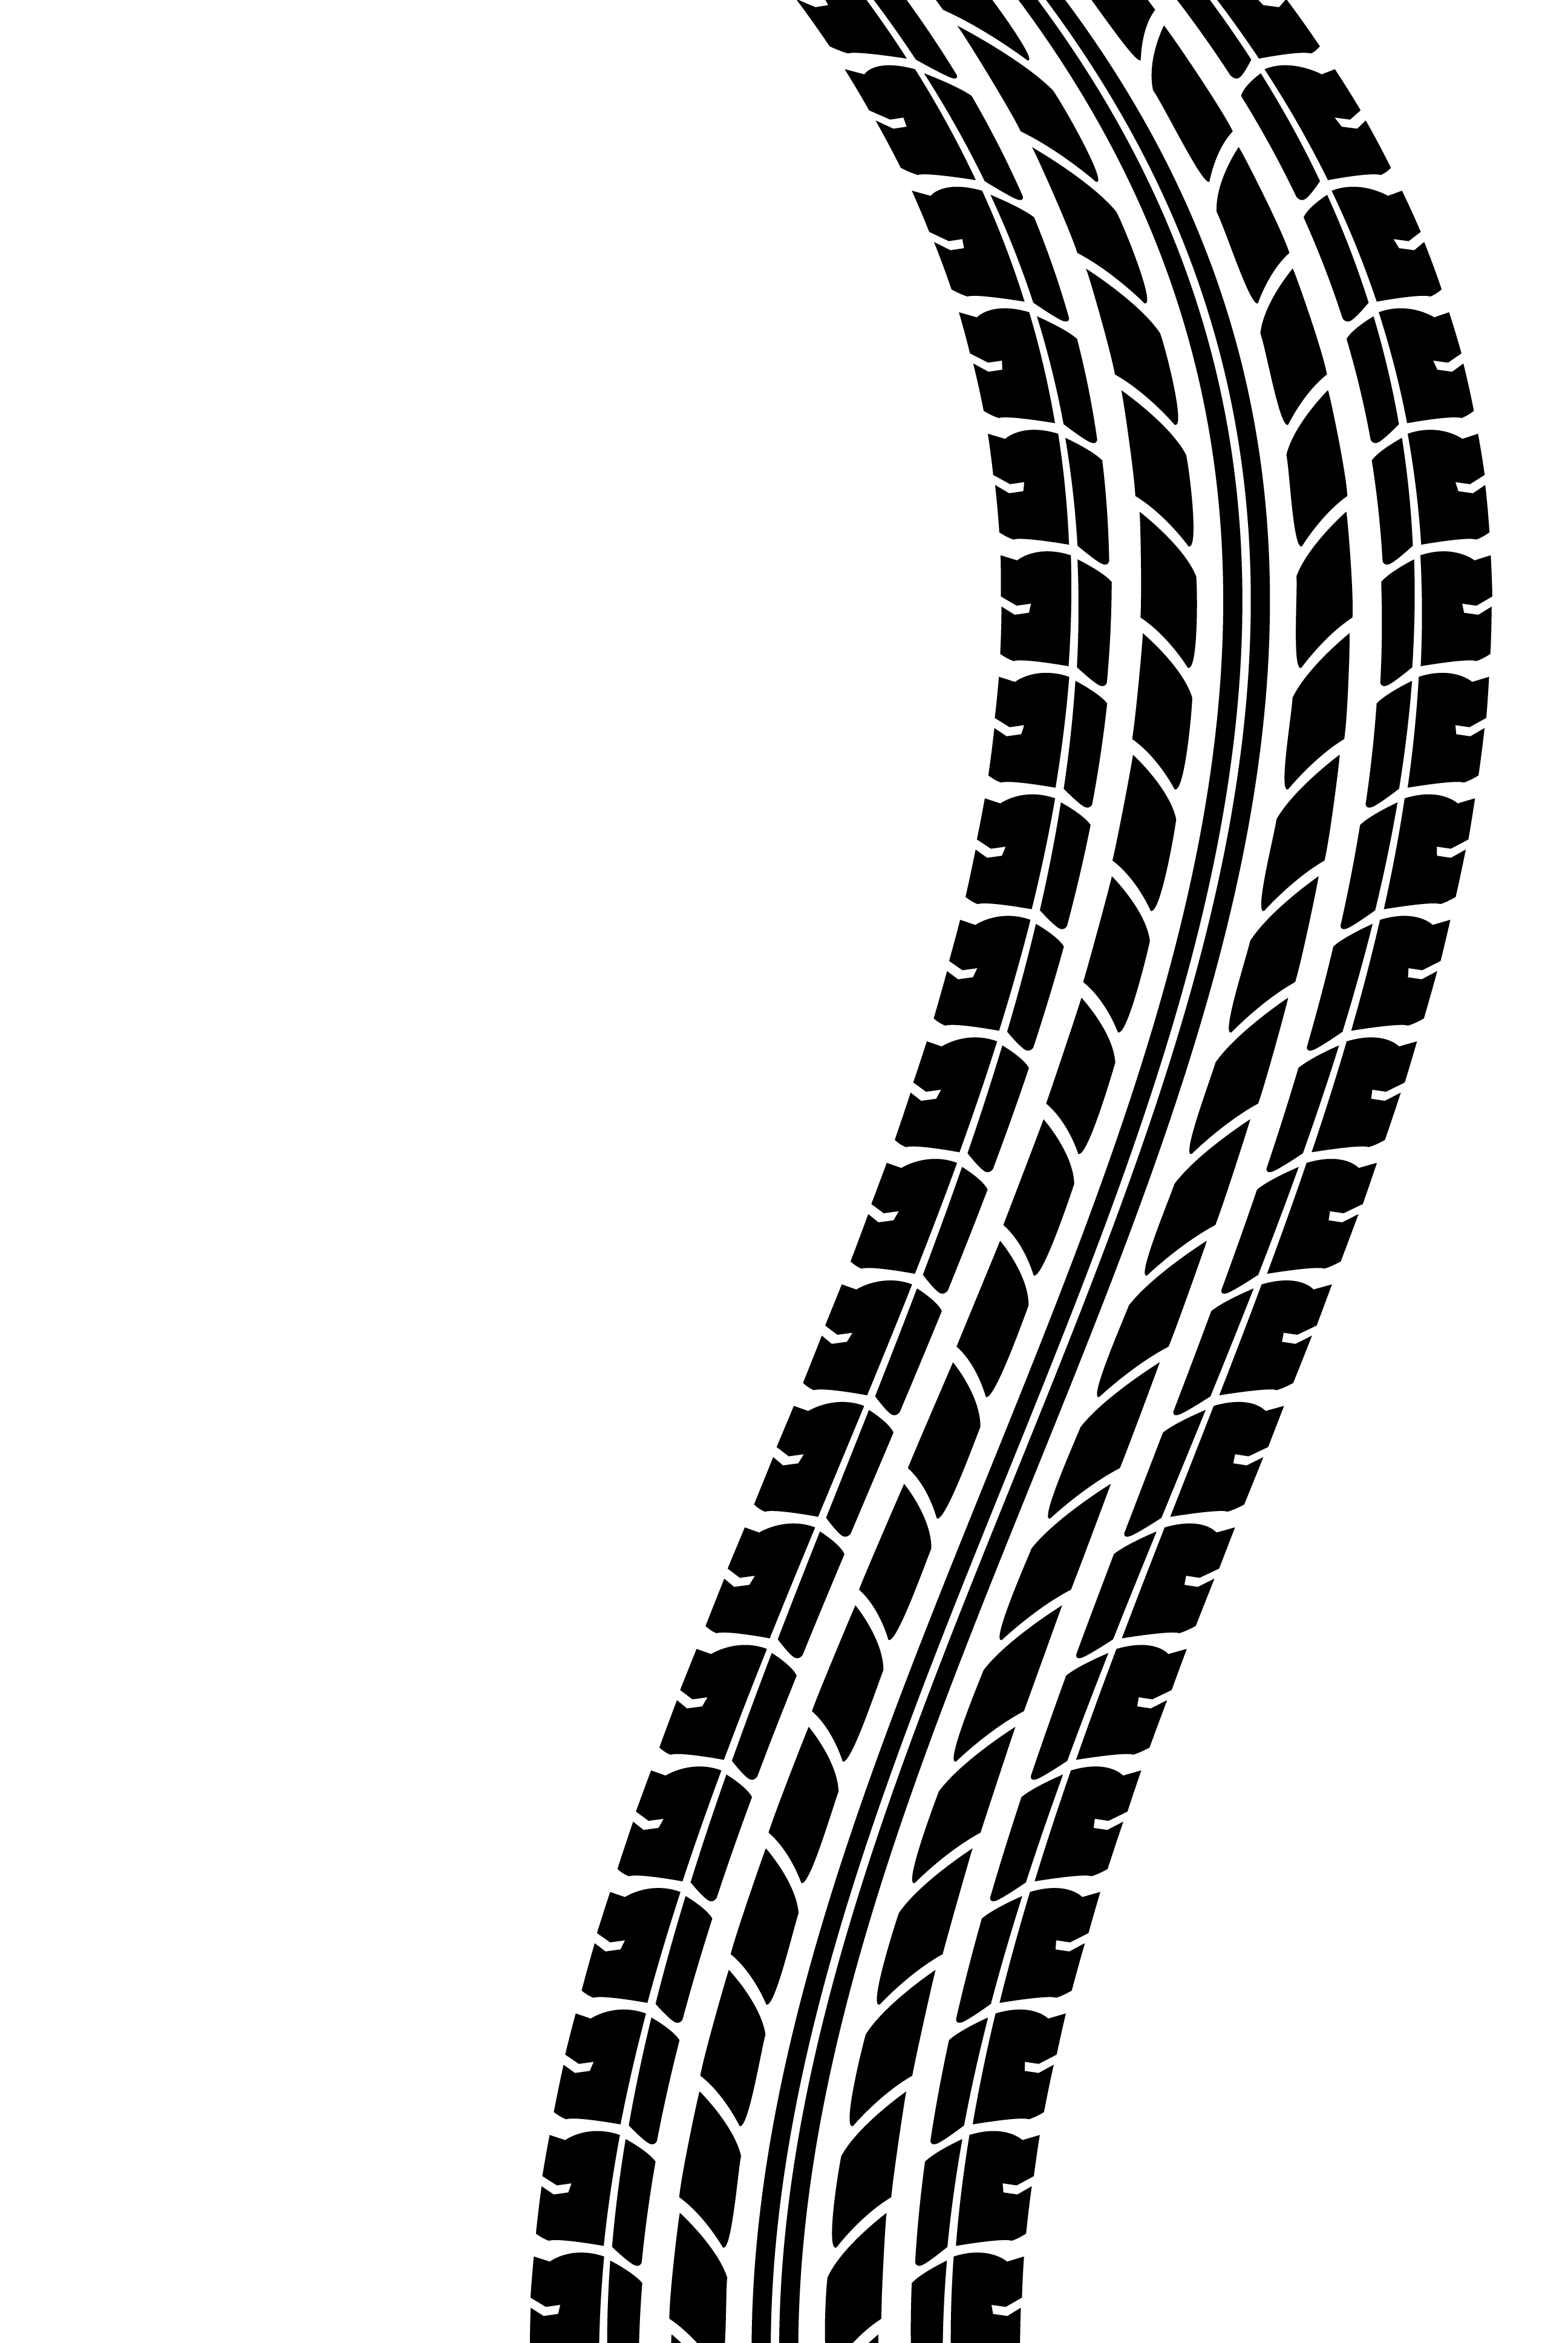 Race car tire tread clipart